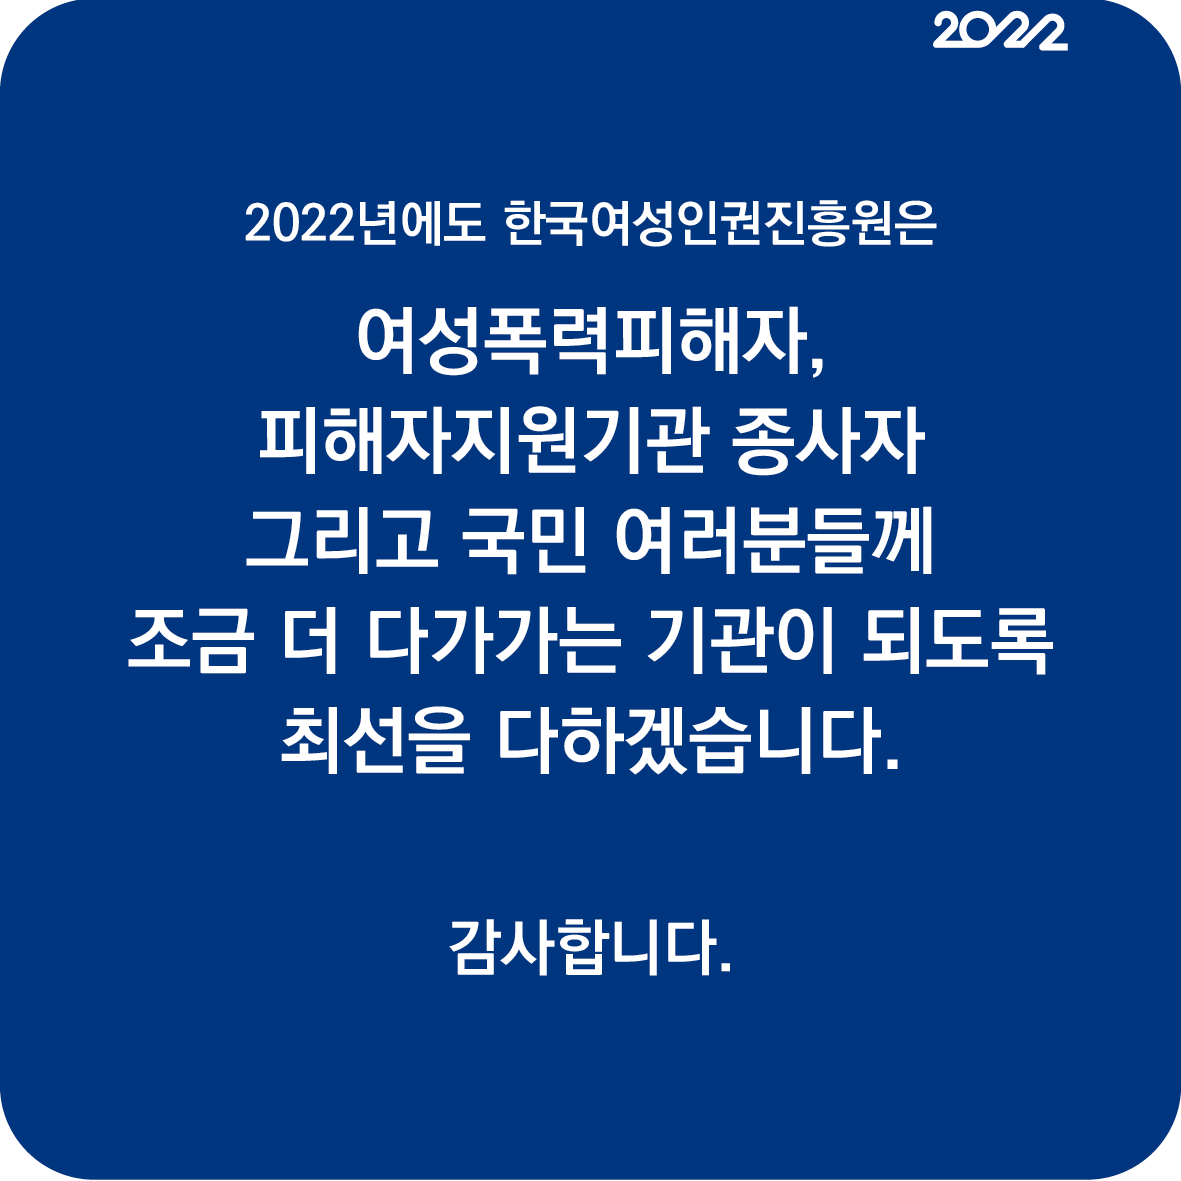 18장 2022년에도 한국여성인권진흥원은 여성폭력피해자, 피해자지원기관 종사자 그리고 국민 여러분들께 조금 더 다가가는 기관이 되도록 최선을 다하겠습니다. 감사합니다.